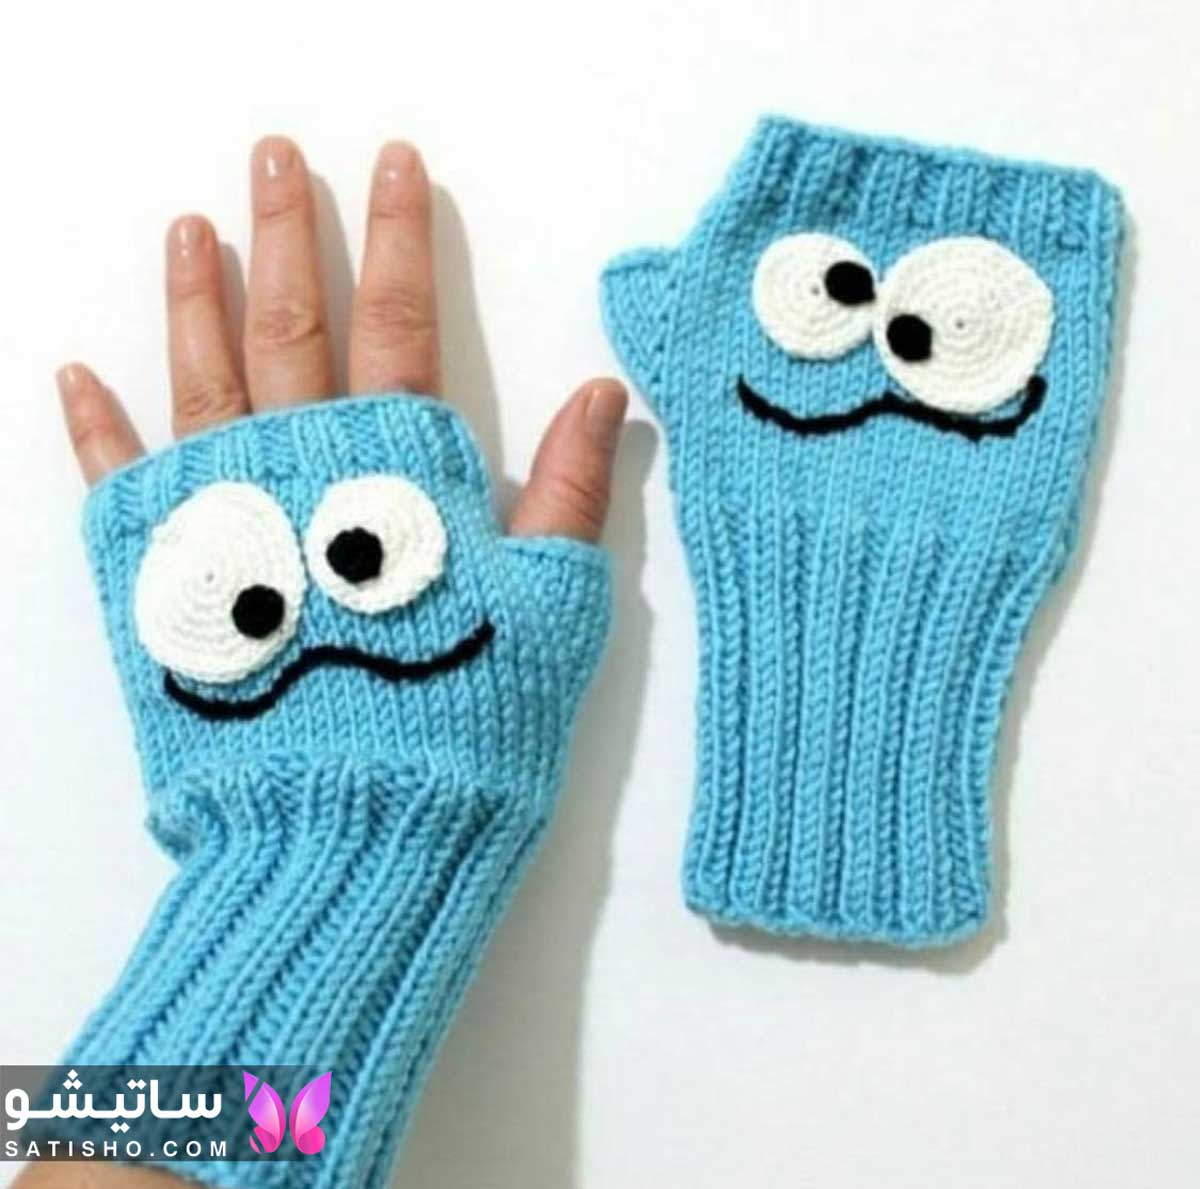 satisho12 - دستکش بافتنی بچه گانه، گرمای دلنشین در روزهای سرد برای دست بچه ها